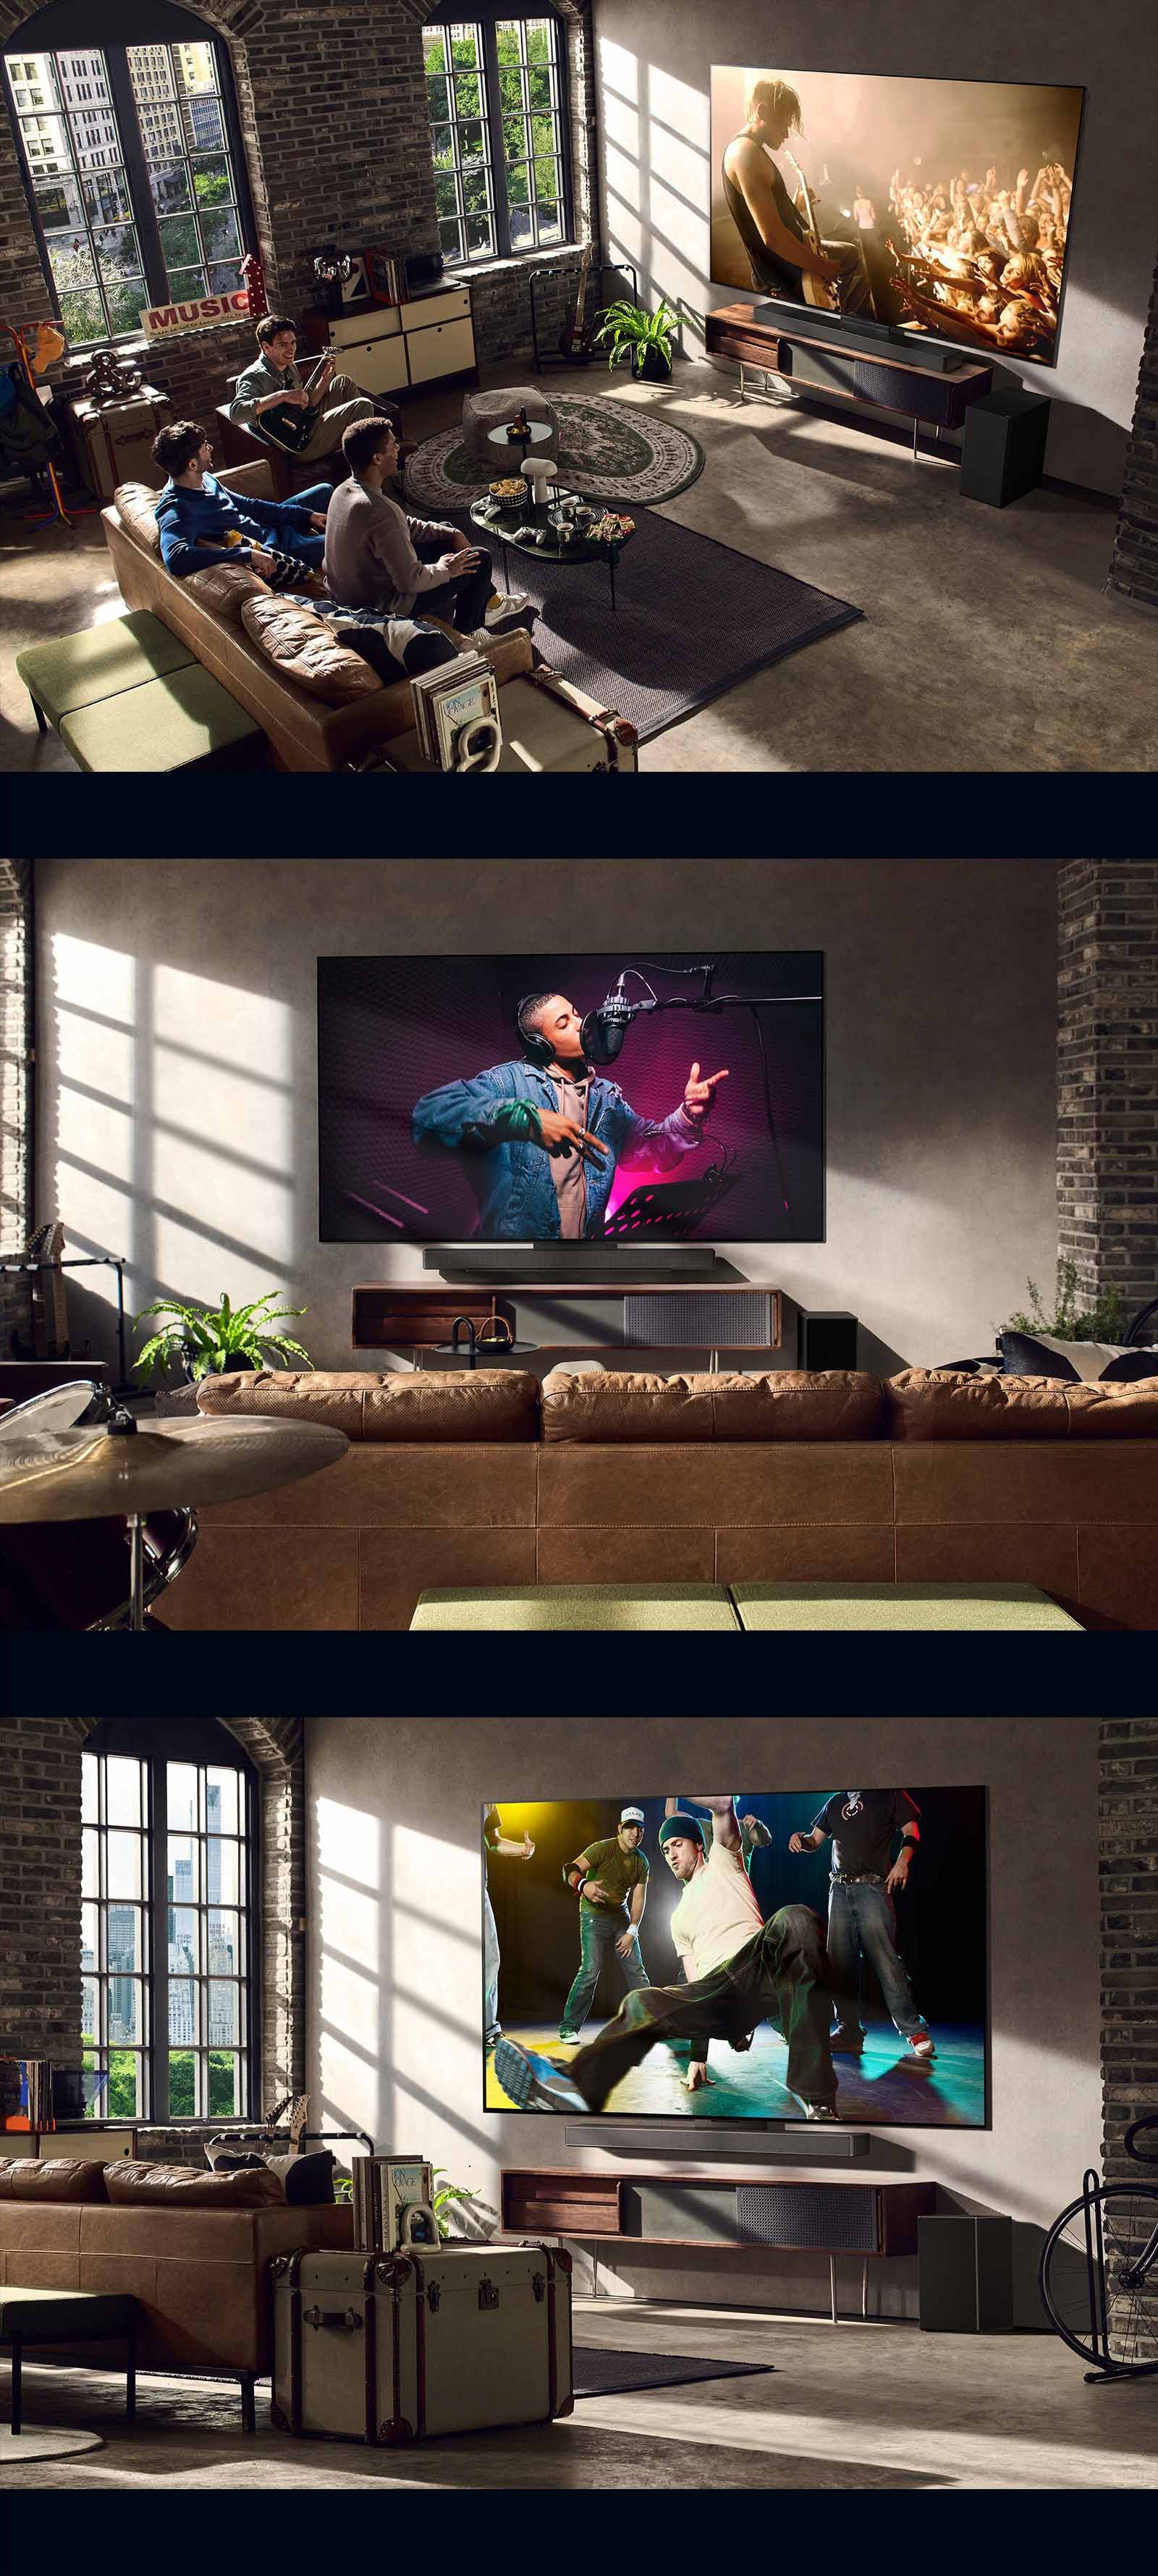 Les images présentent trois modes de vie. De haut en bas : trois hommes regardent la vidéo d’un concert dans un salon. Un téléviseur LG placé sur le mur affiche une scène d’enregistrement musical tandis qu’un second téléviseur LG (également fixé au mur) diffuse une scène de breakdance en diagonale.